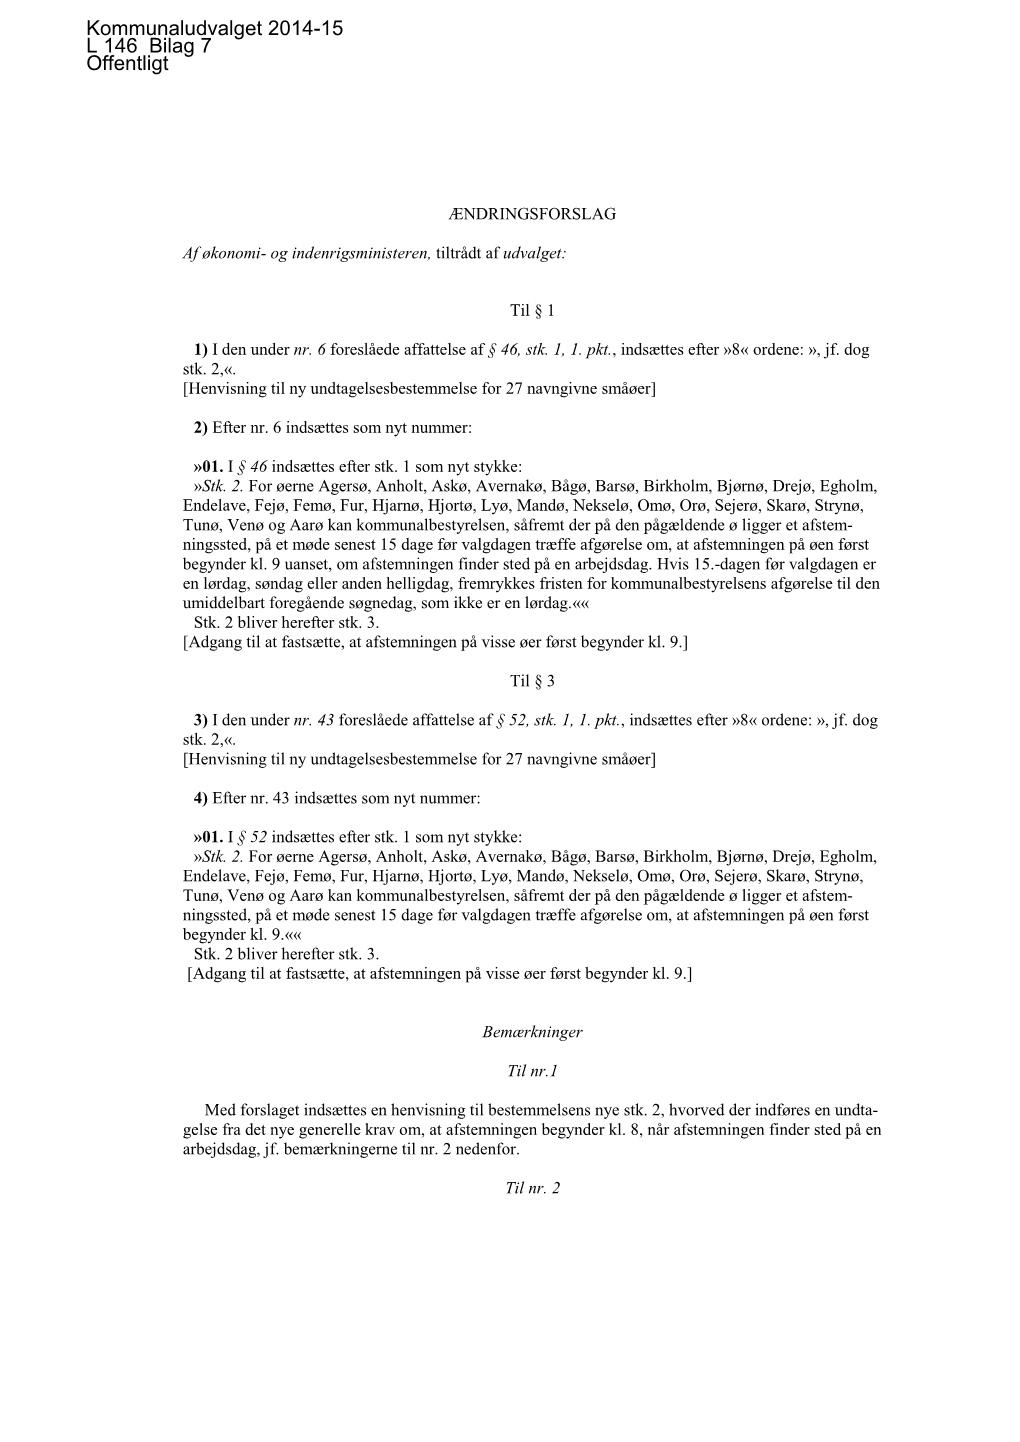 L 146 Bilag 7: Ændringsforslag Til L